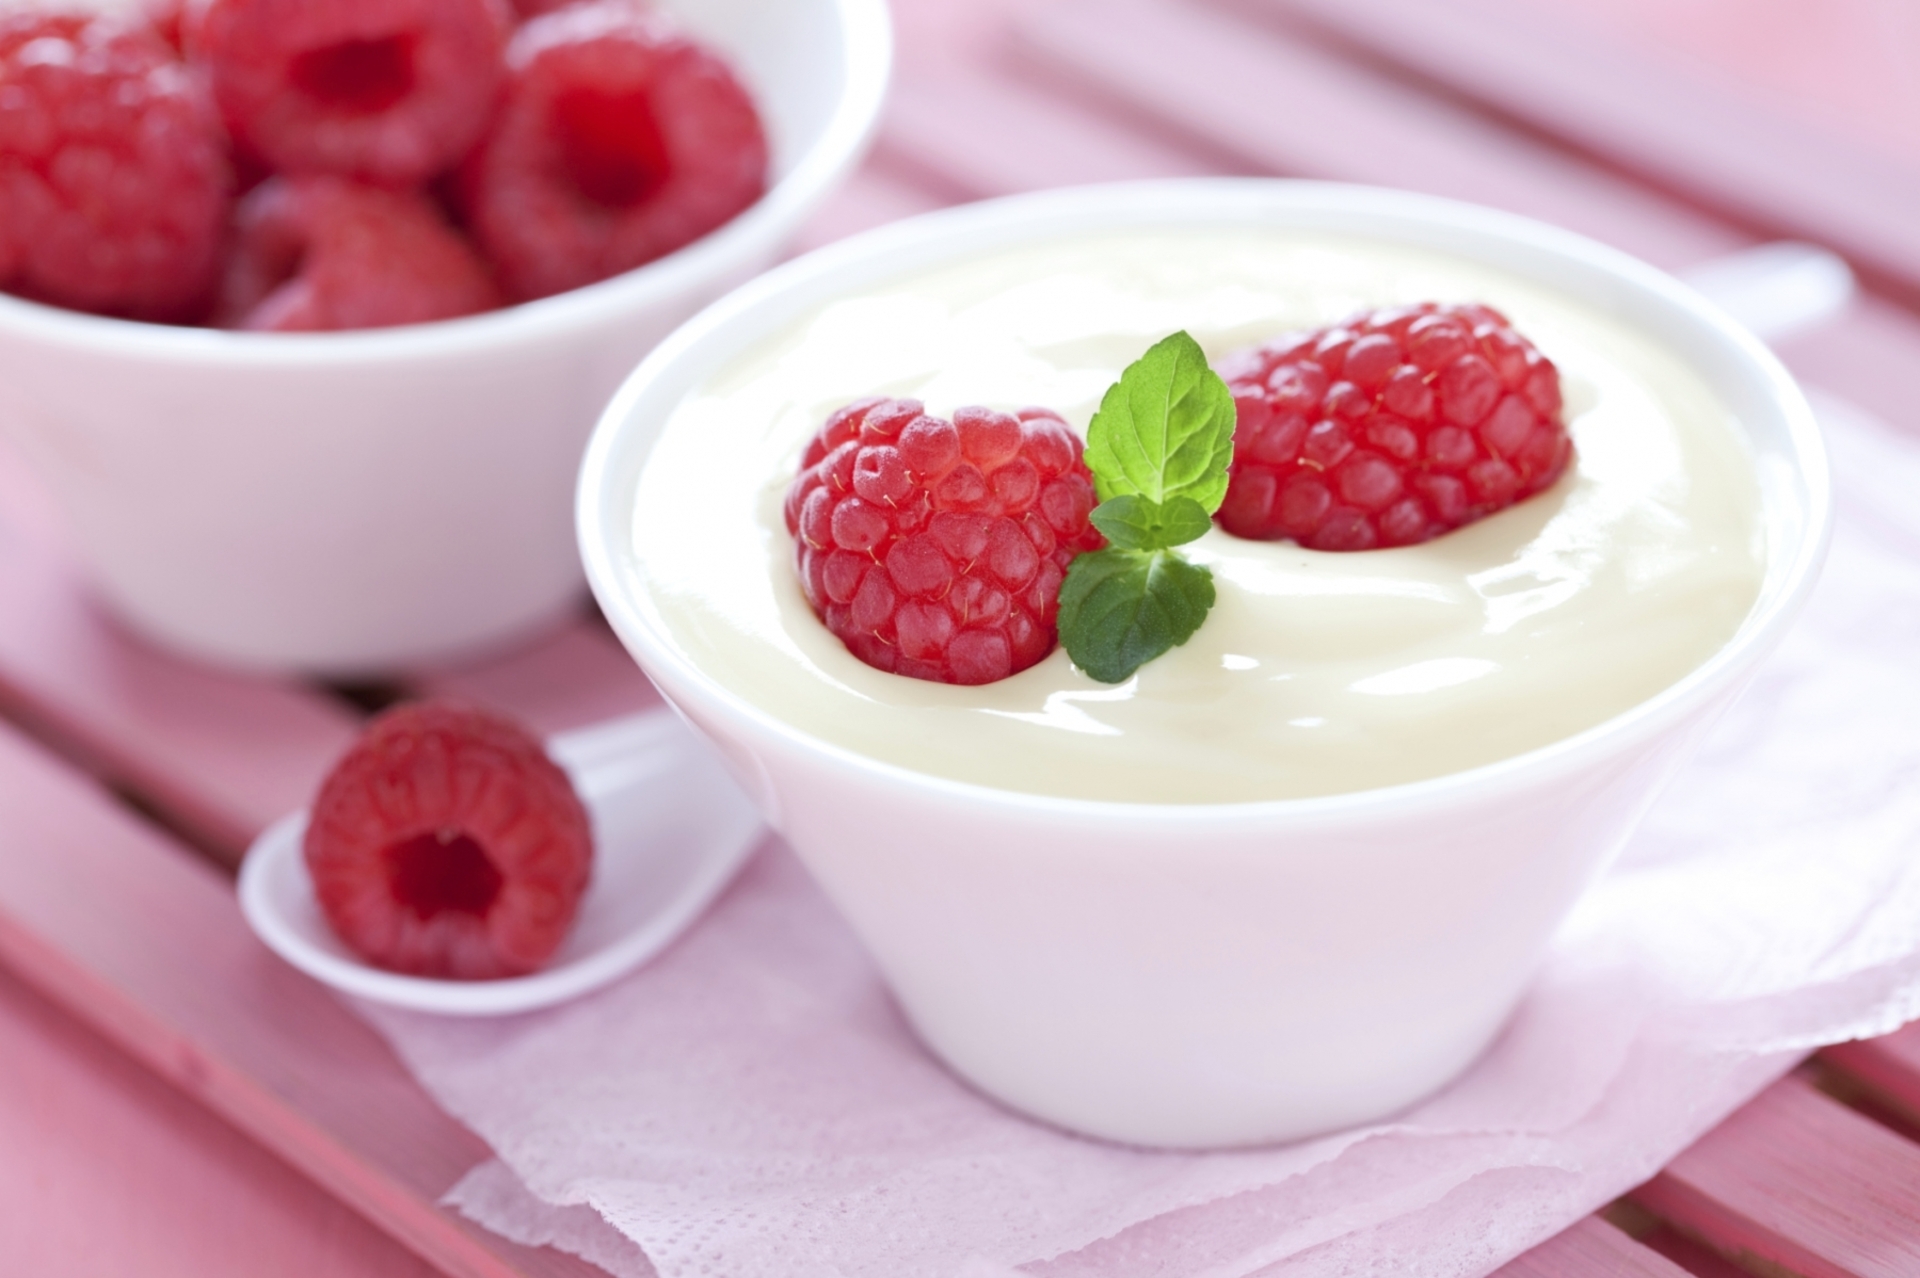  Consumir yogurt reduce el riesgo de contraer diabetes